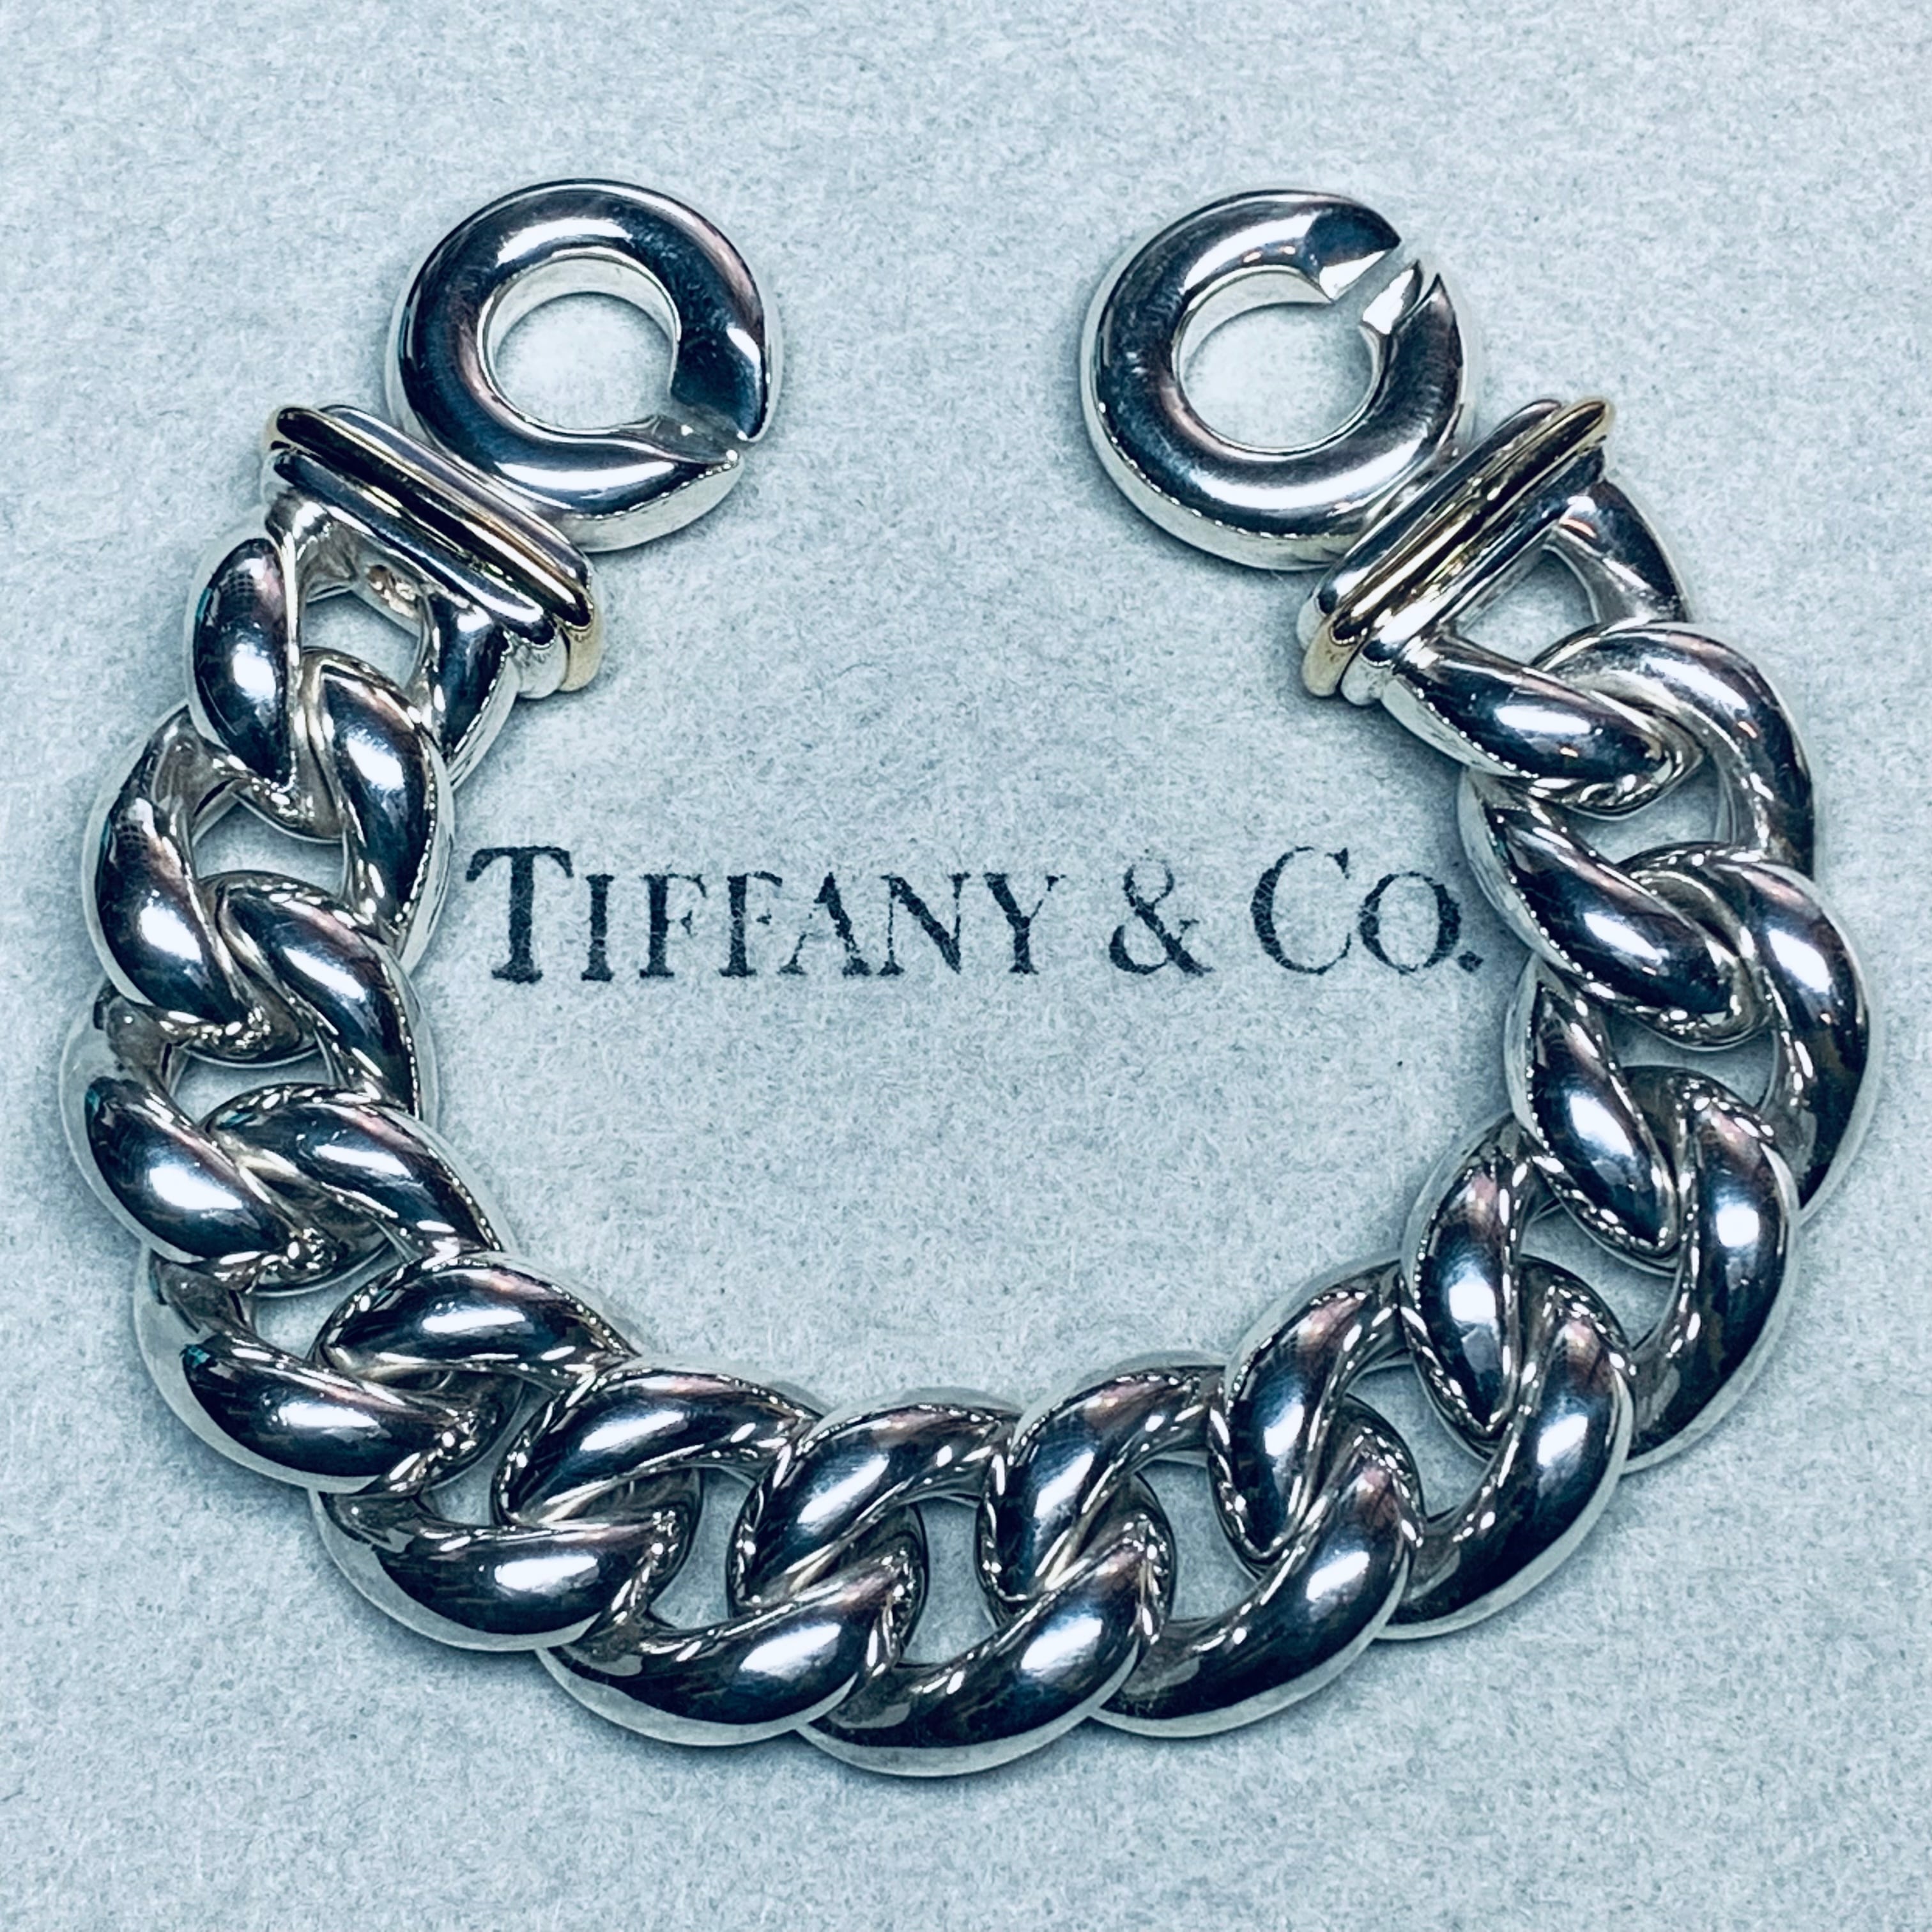 Vintage Tiffany ティファニー Chain Bracelet | www.liadantas.com.br